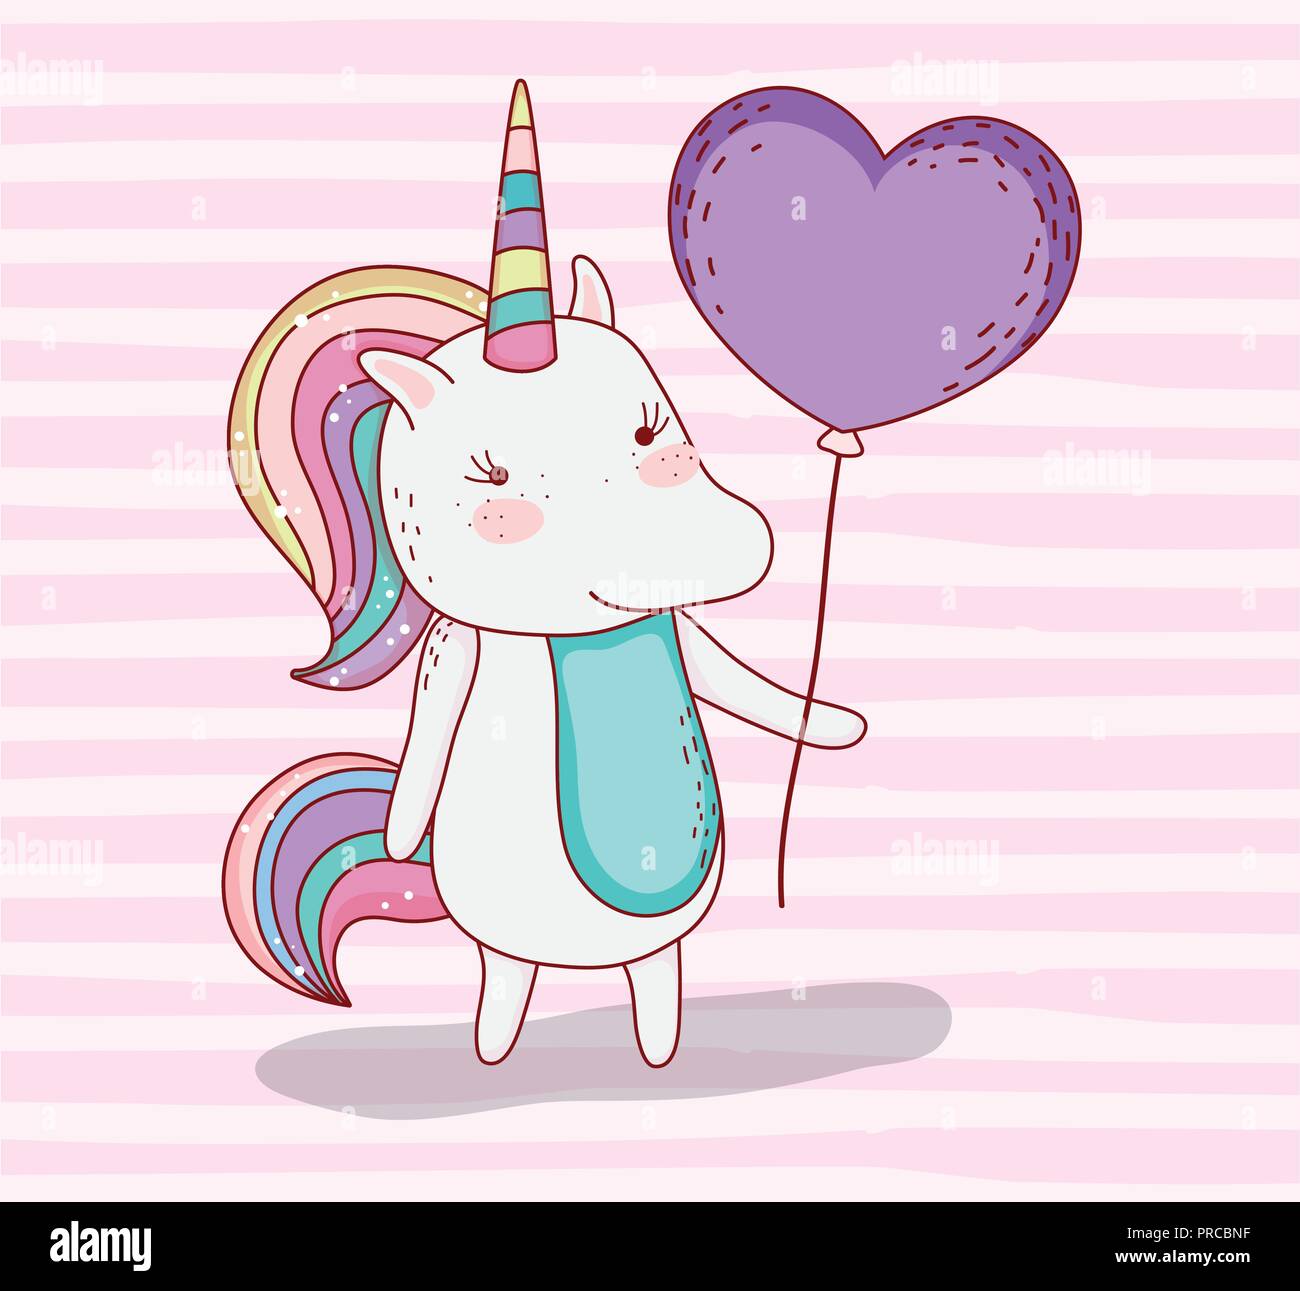 beauty unicorn animal with heart balloon Stock Vector